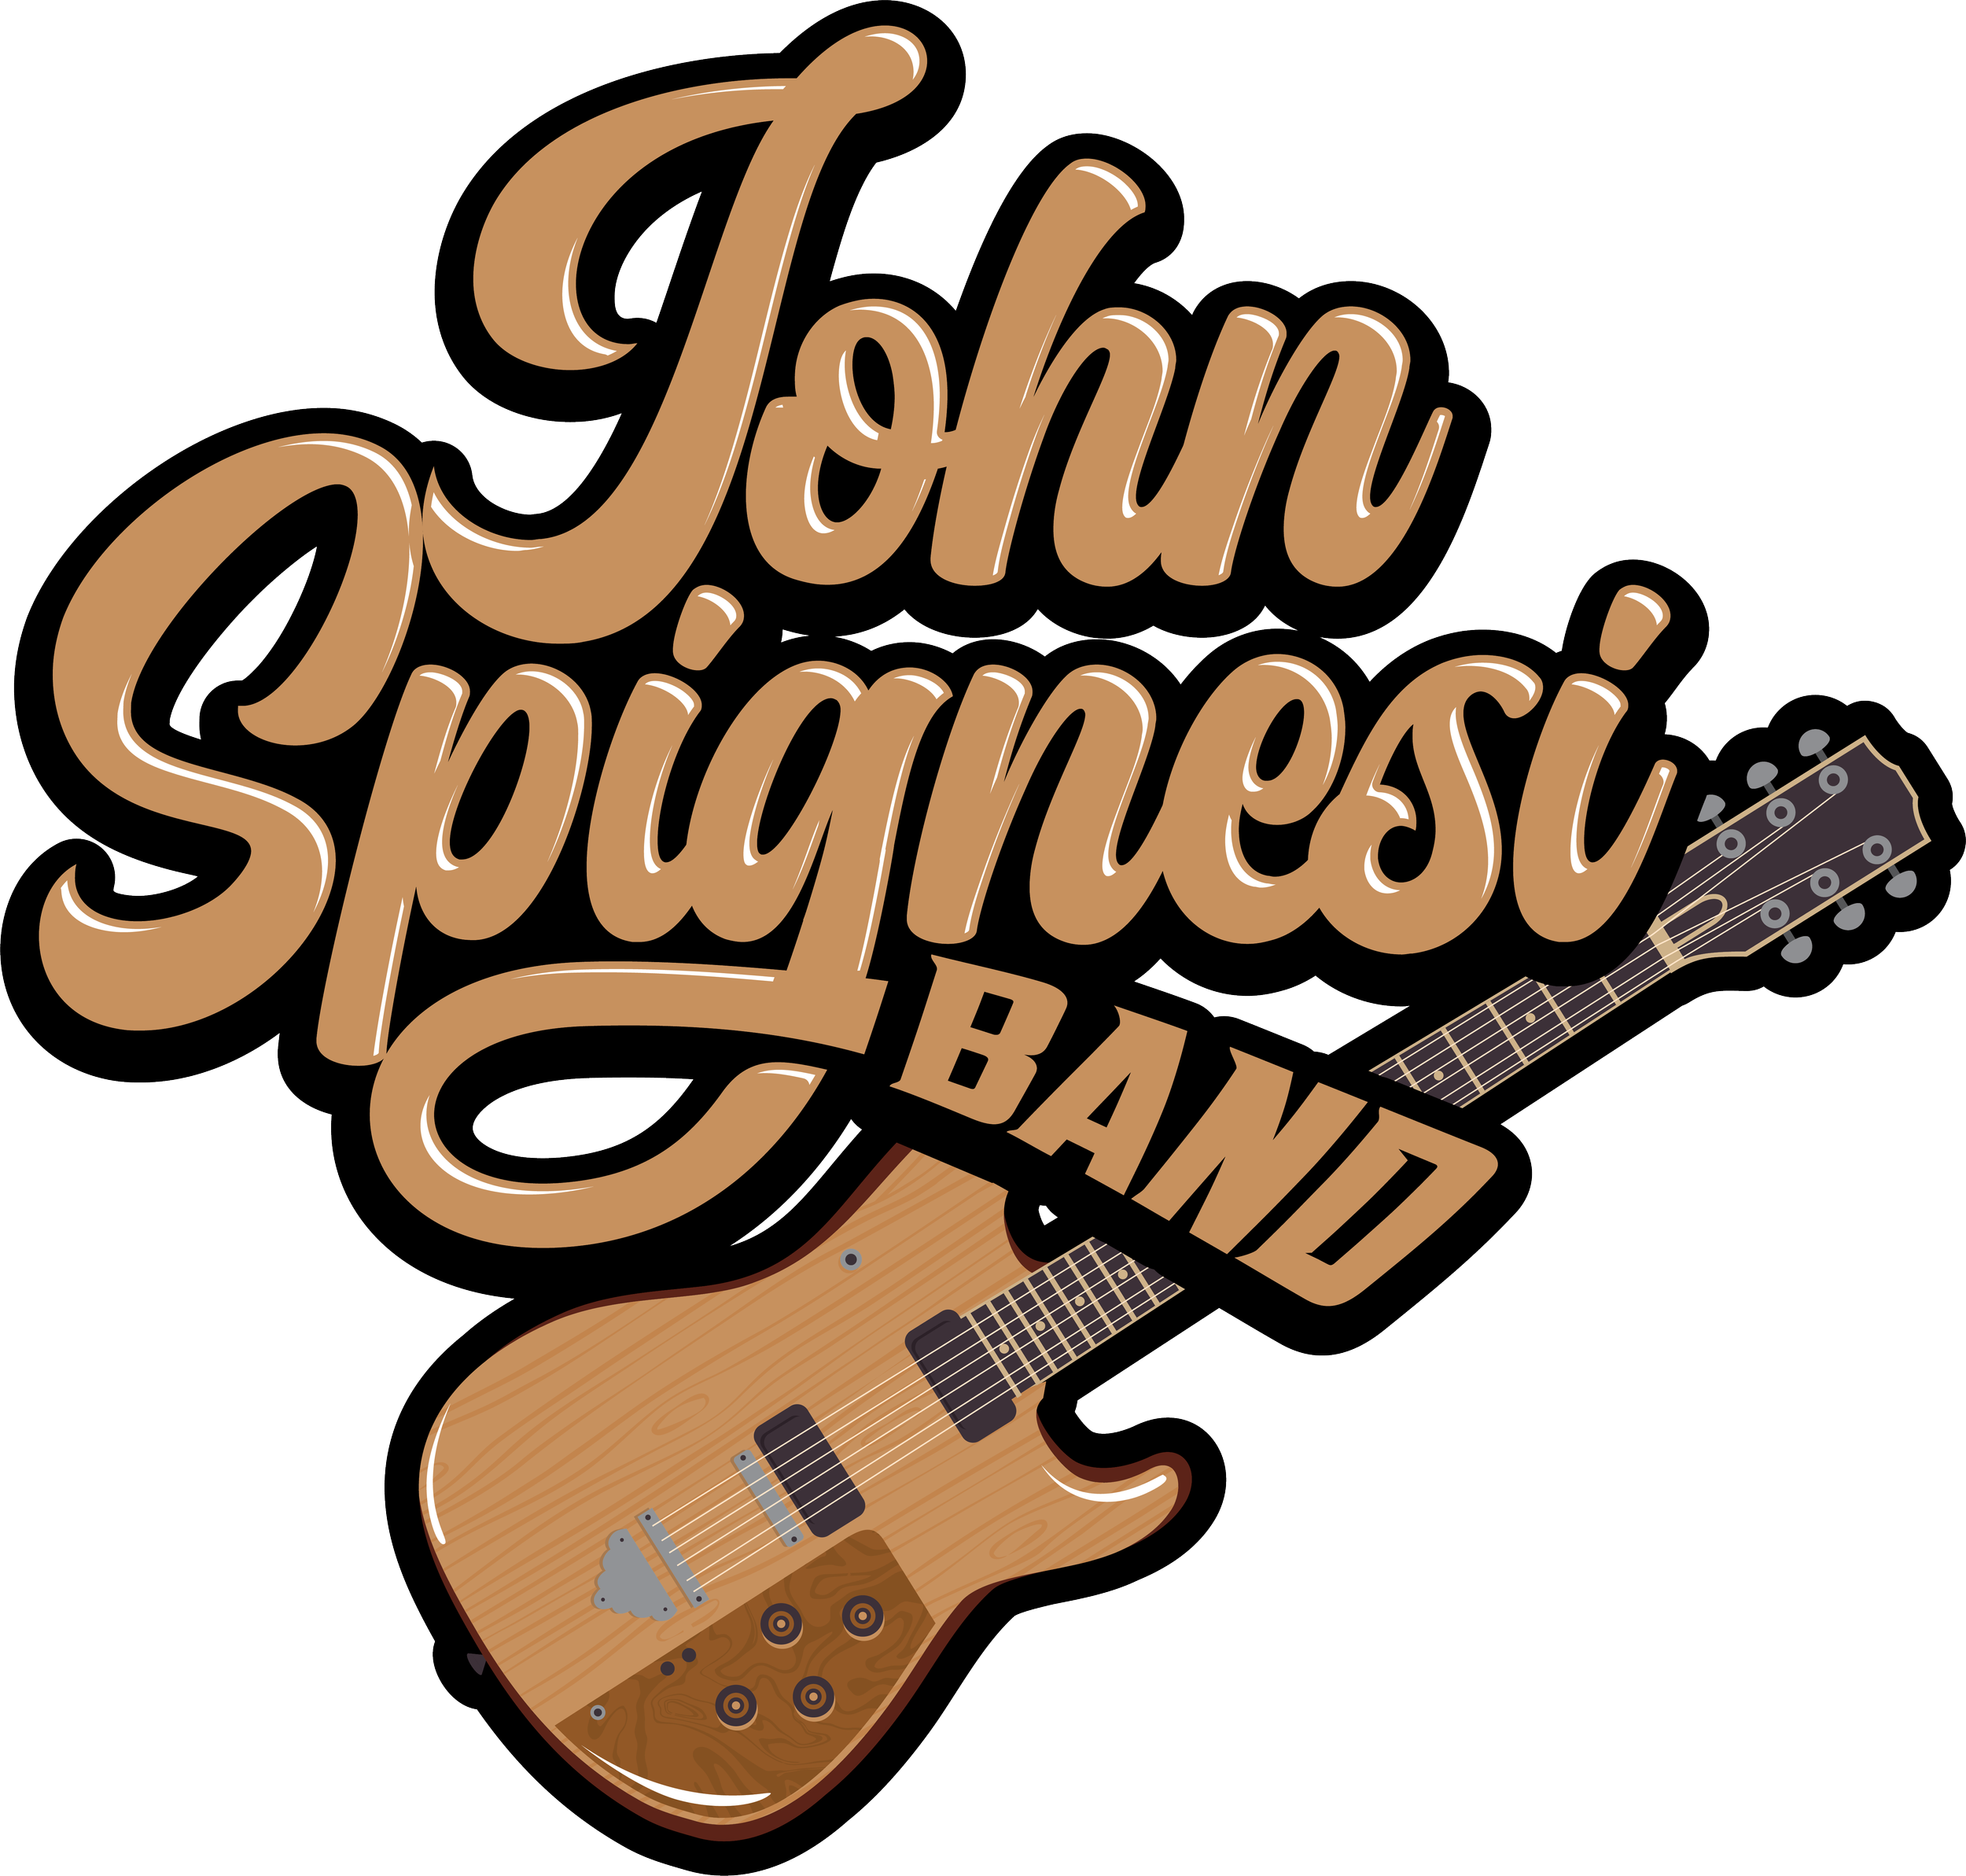 John Spignesi Band